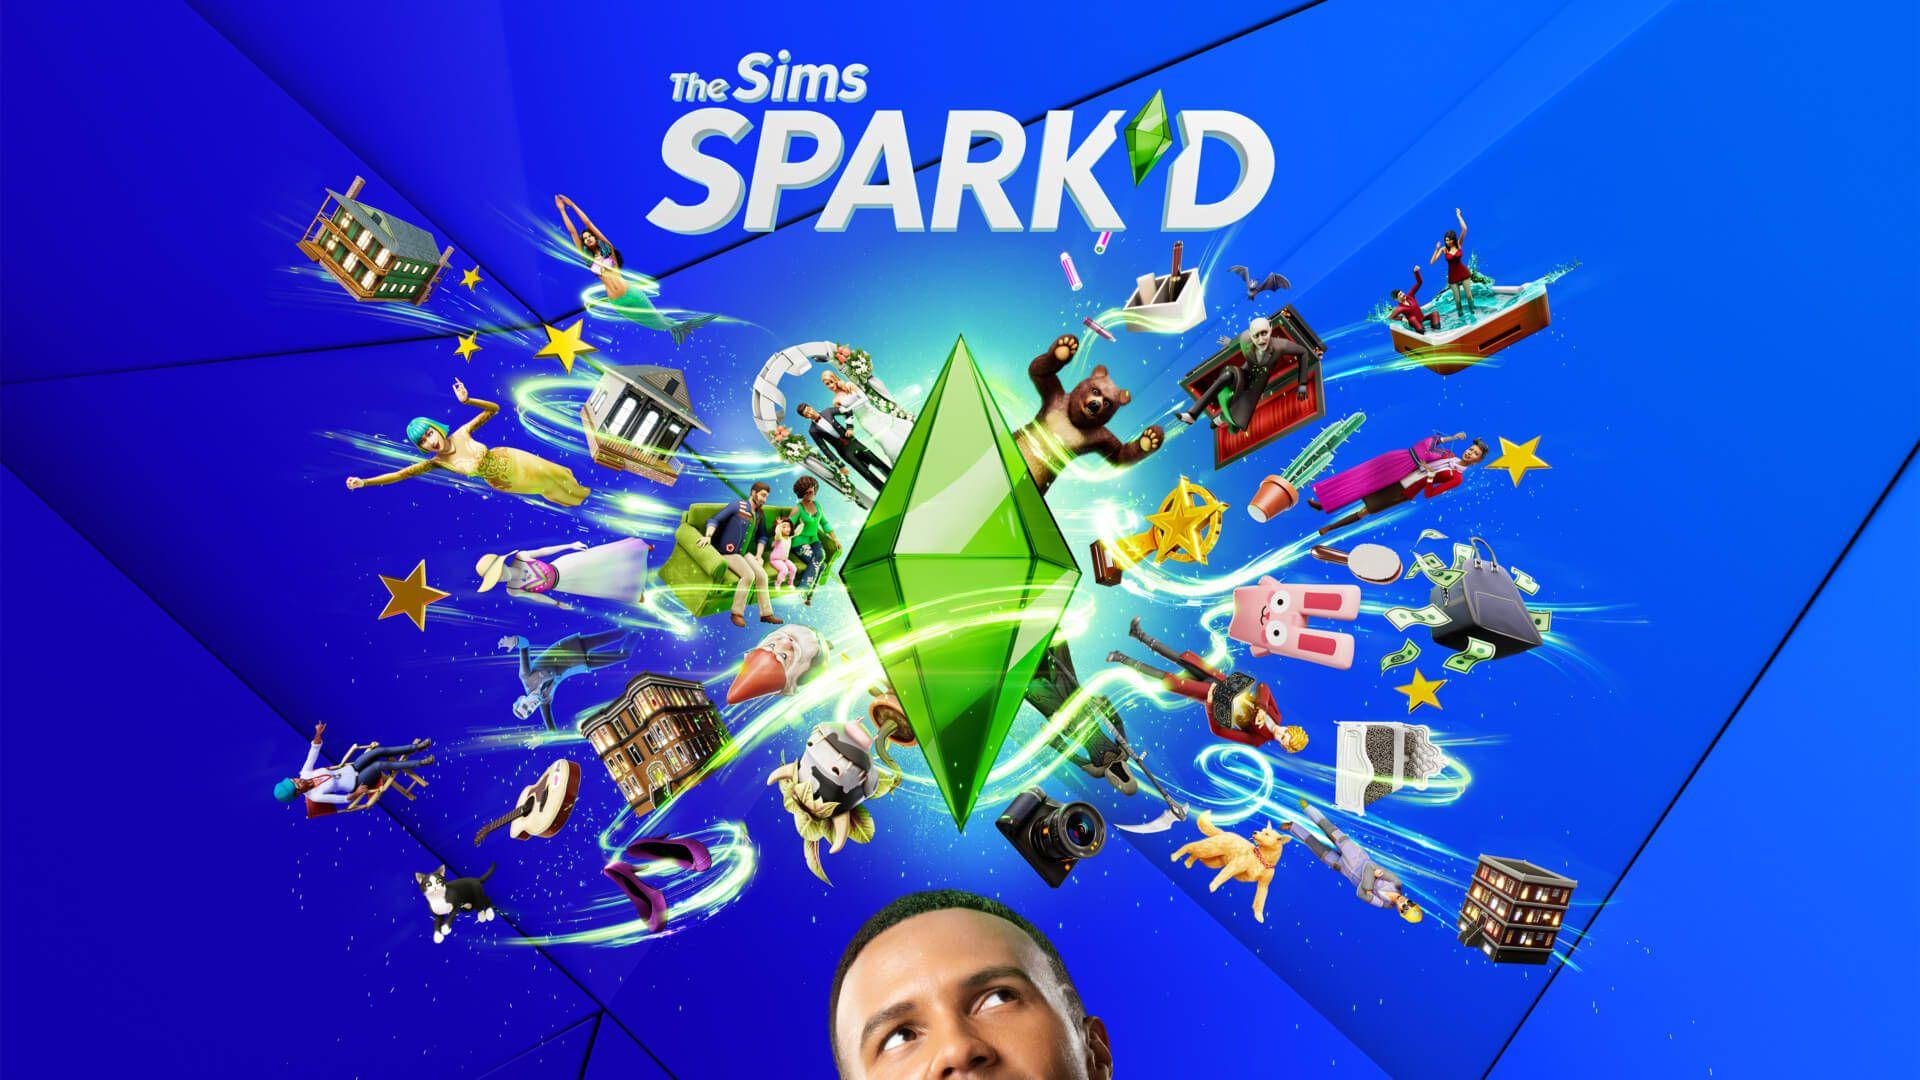 Sims Spark D Key Art 16x9 Rgb